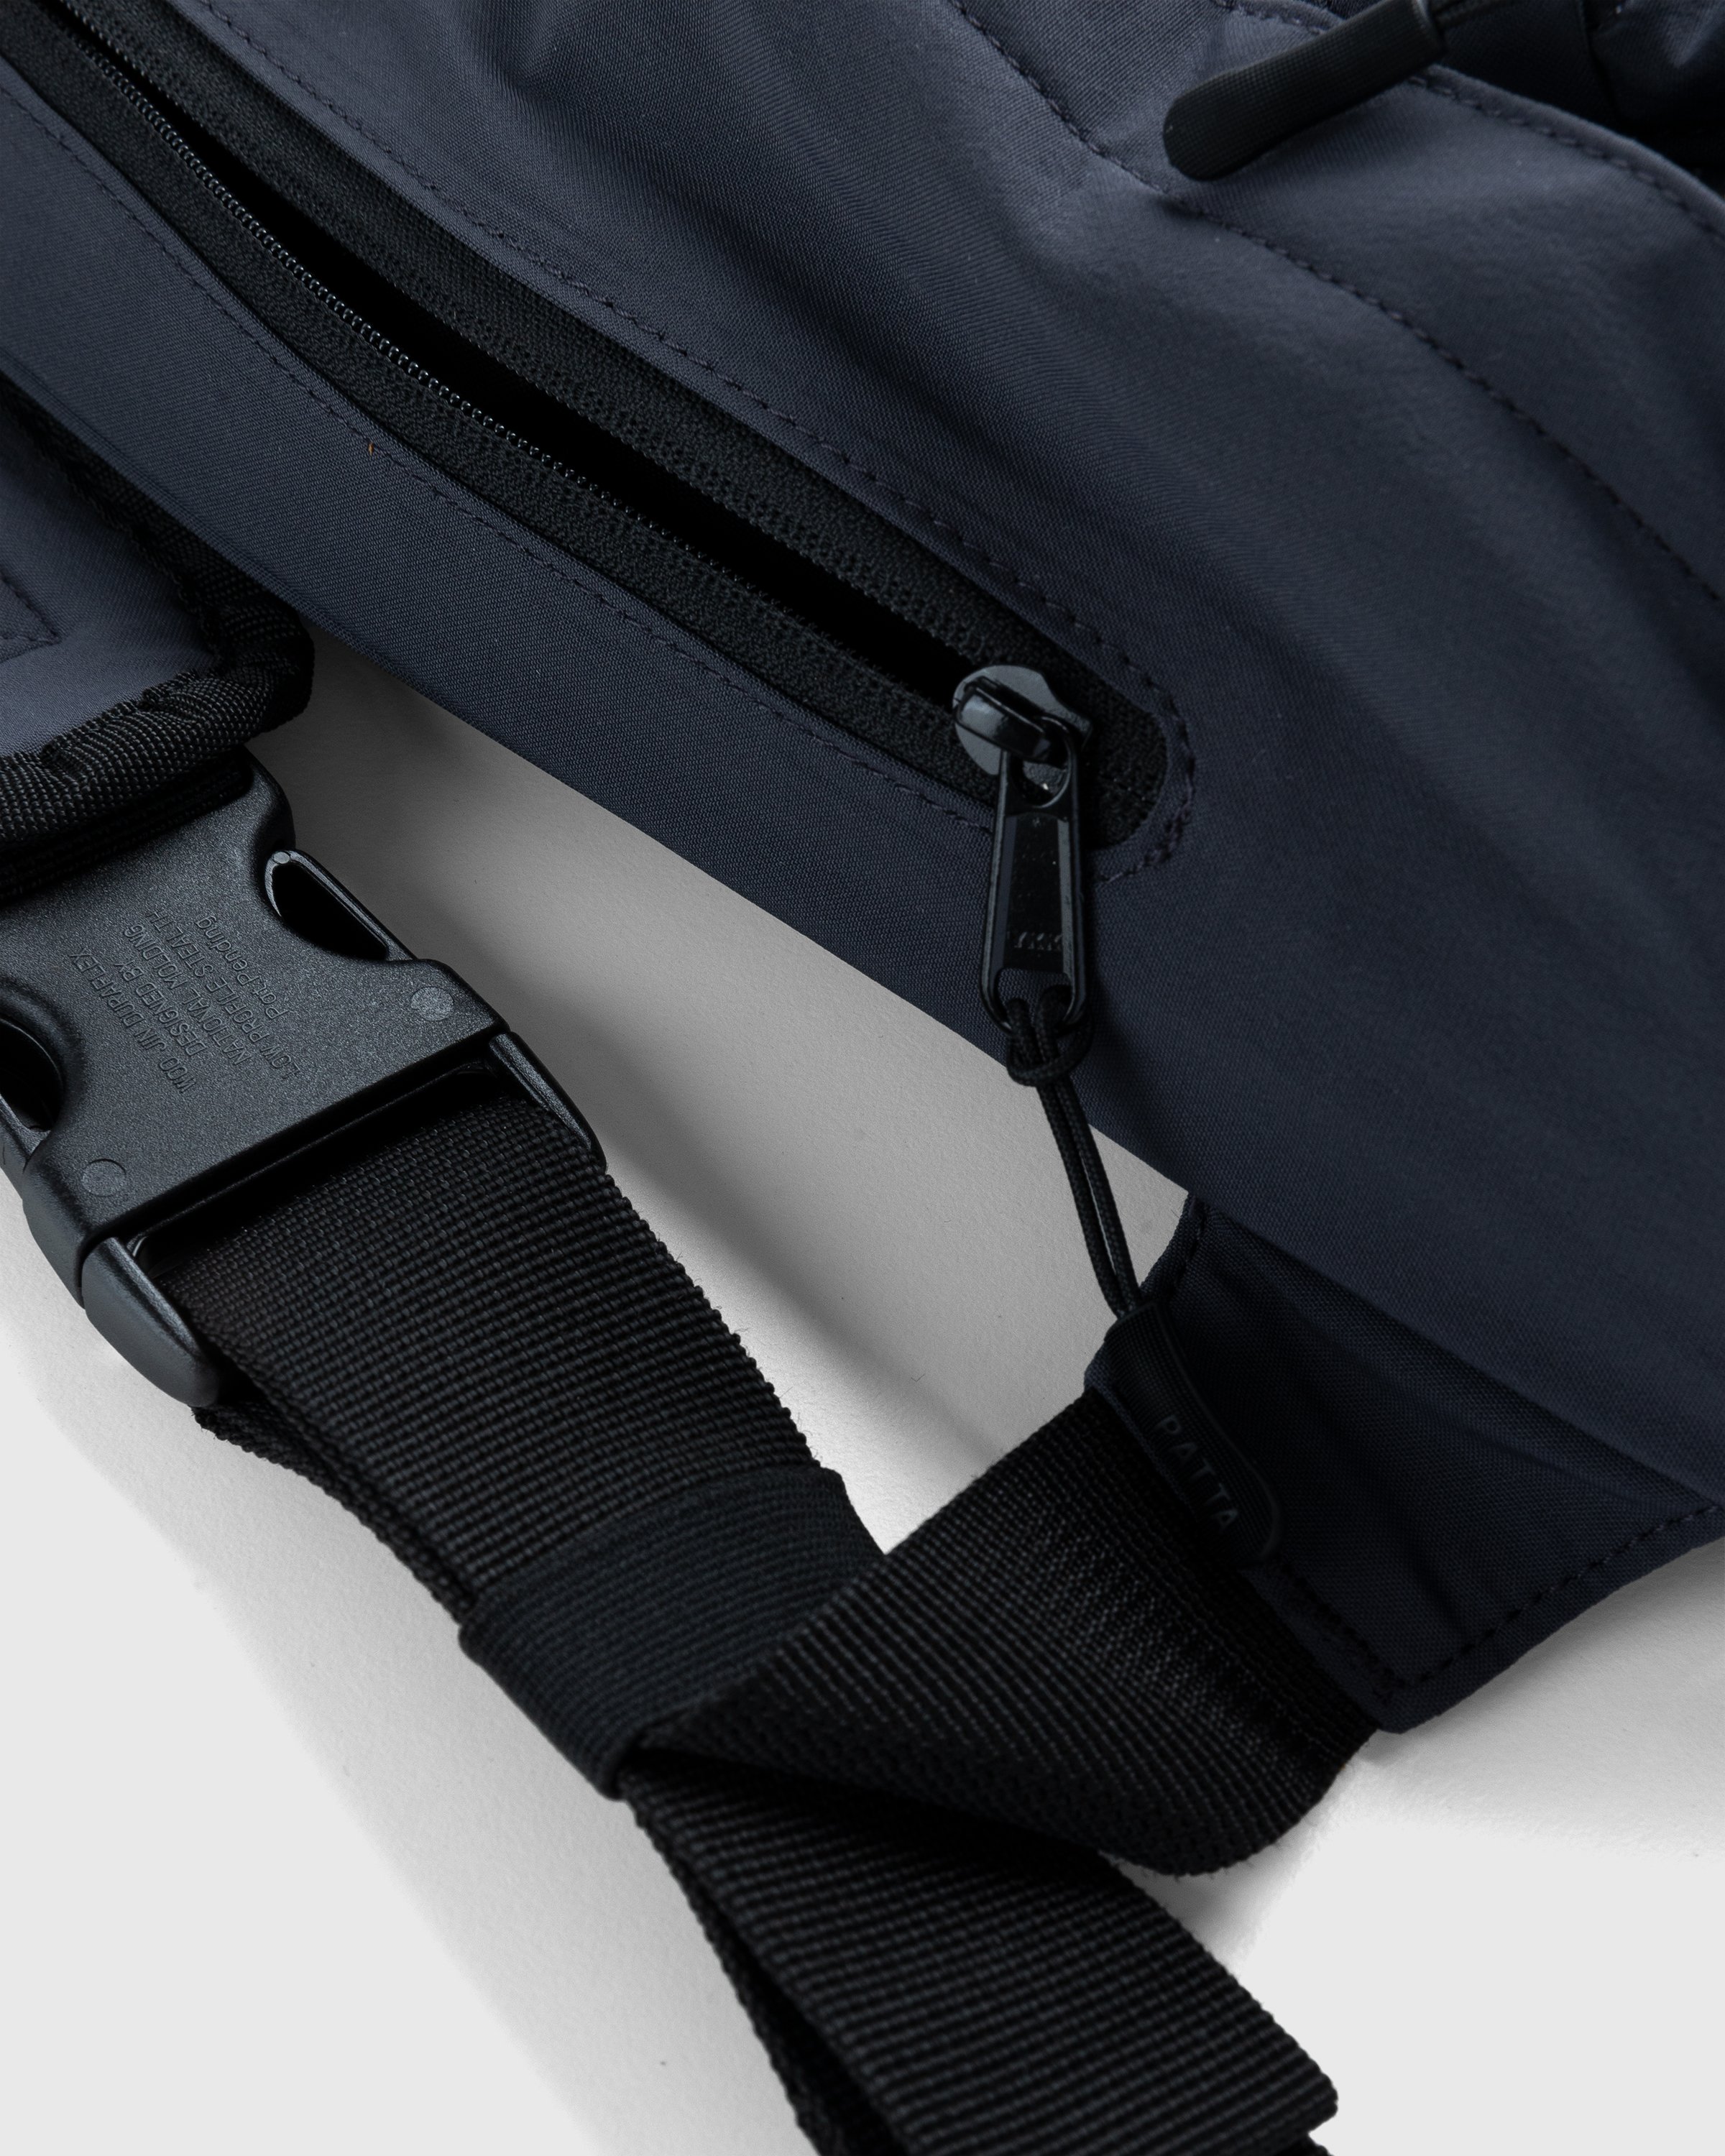 Patta – N039 Sling Bag Charcoal | Highsnobiety Shop